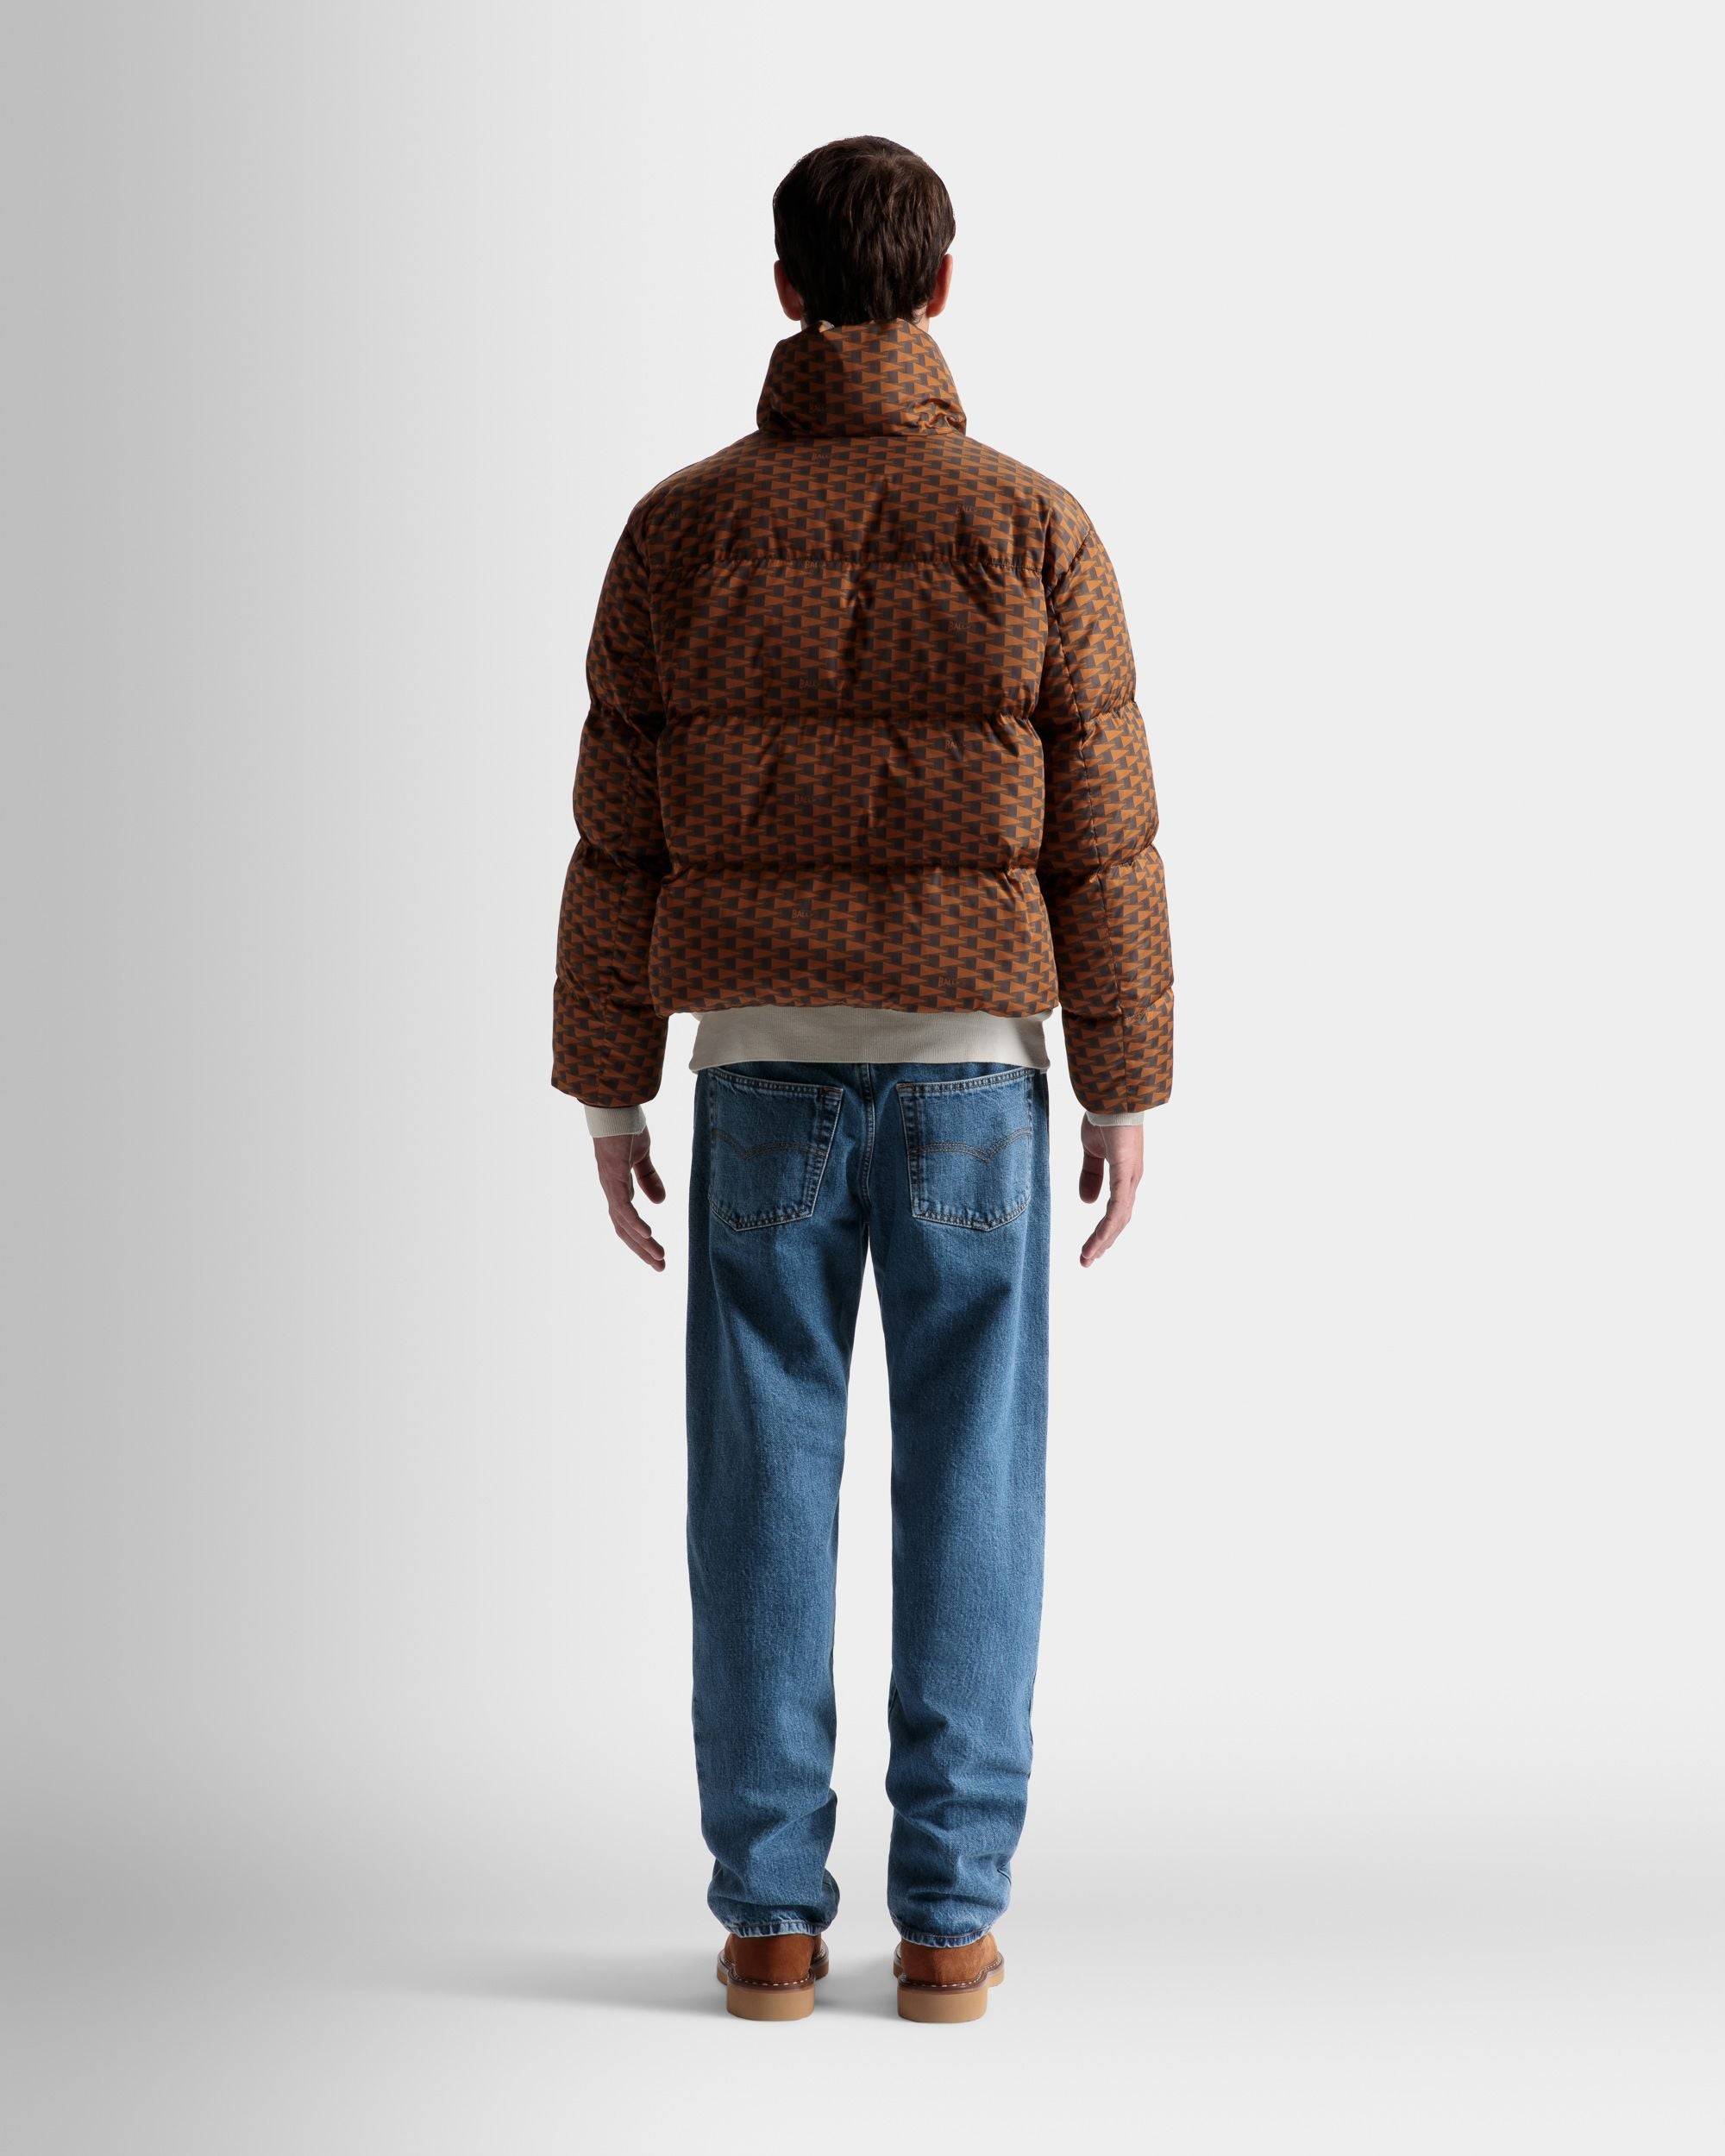 Steppjacke | Jacken und Mäntel für Herren | Nylon in Braun | Bally | Model getragen Rückseite